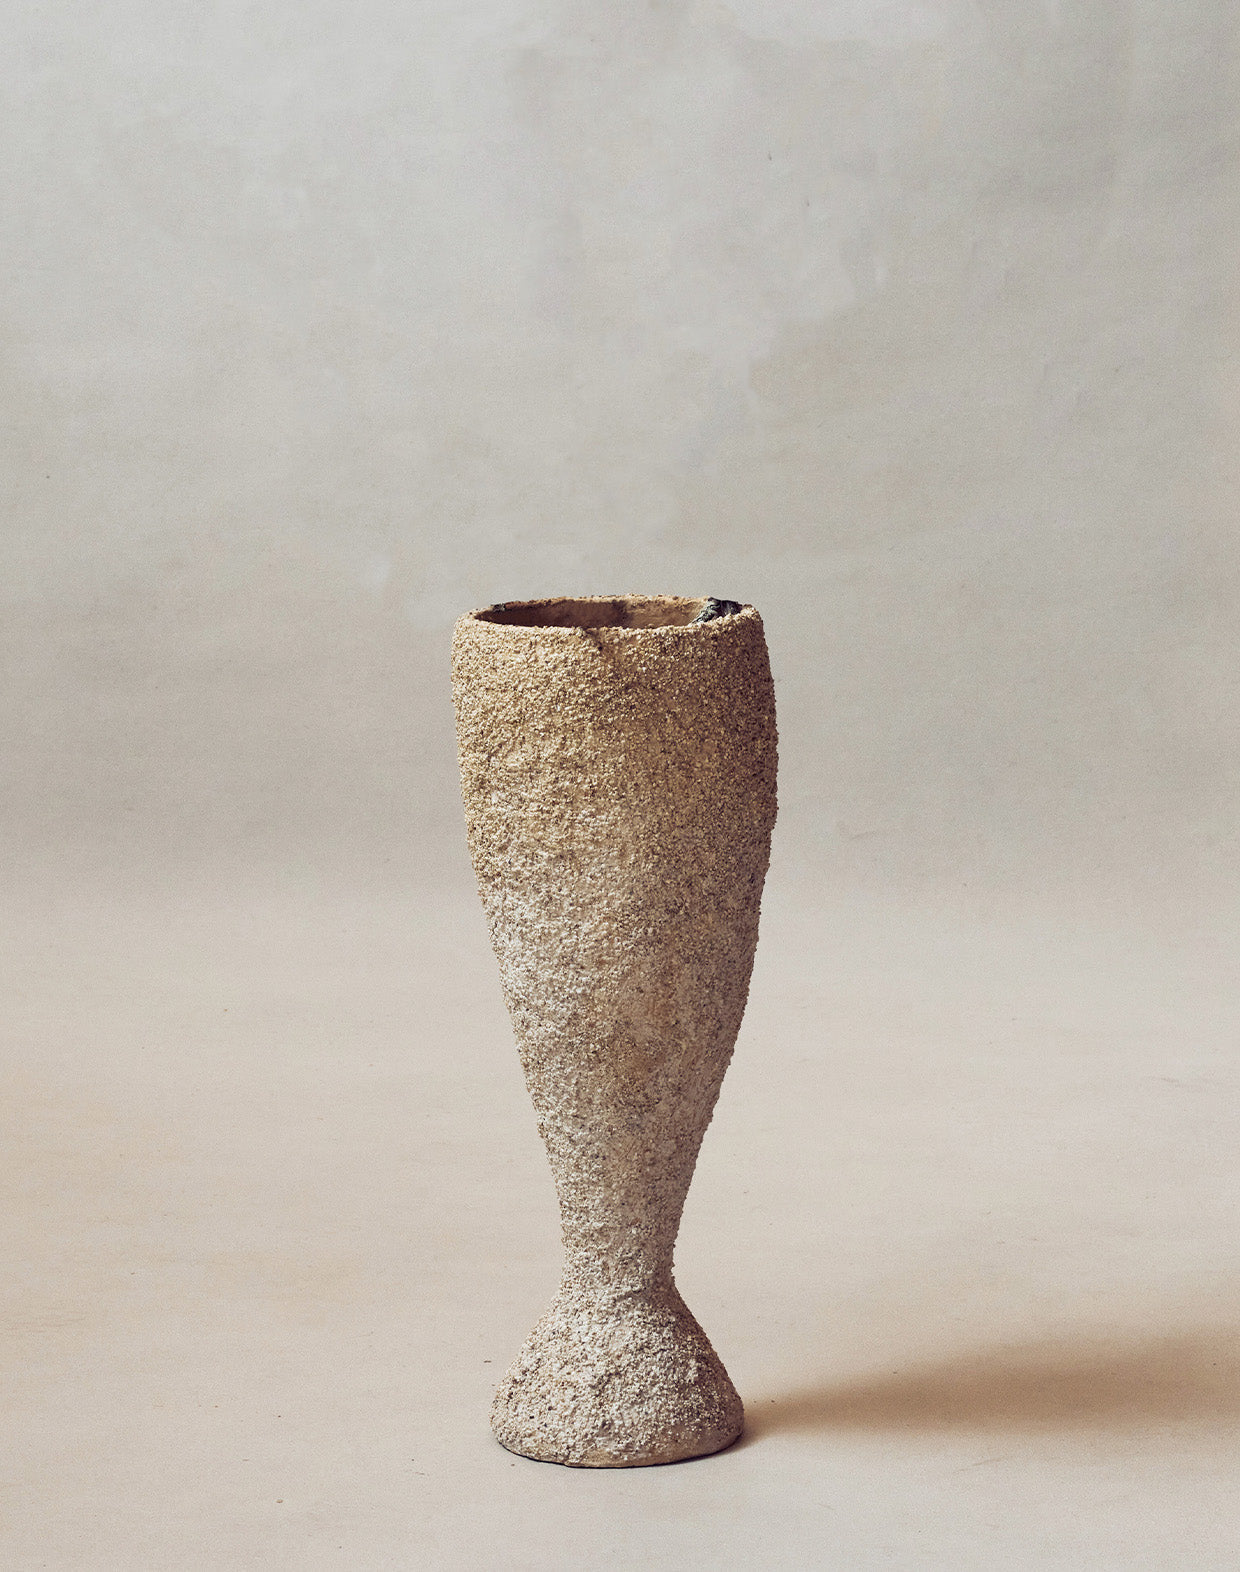 Maggie Wells, Ceramic Sculpture with Terra Sigillata Glaze No. 21